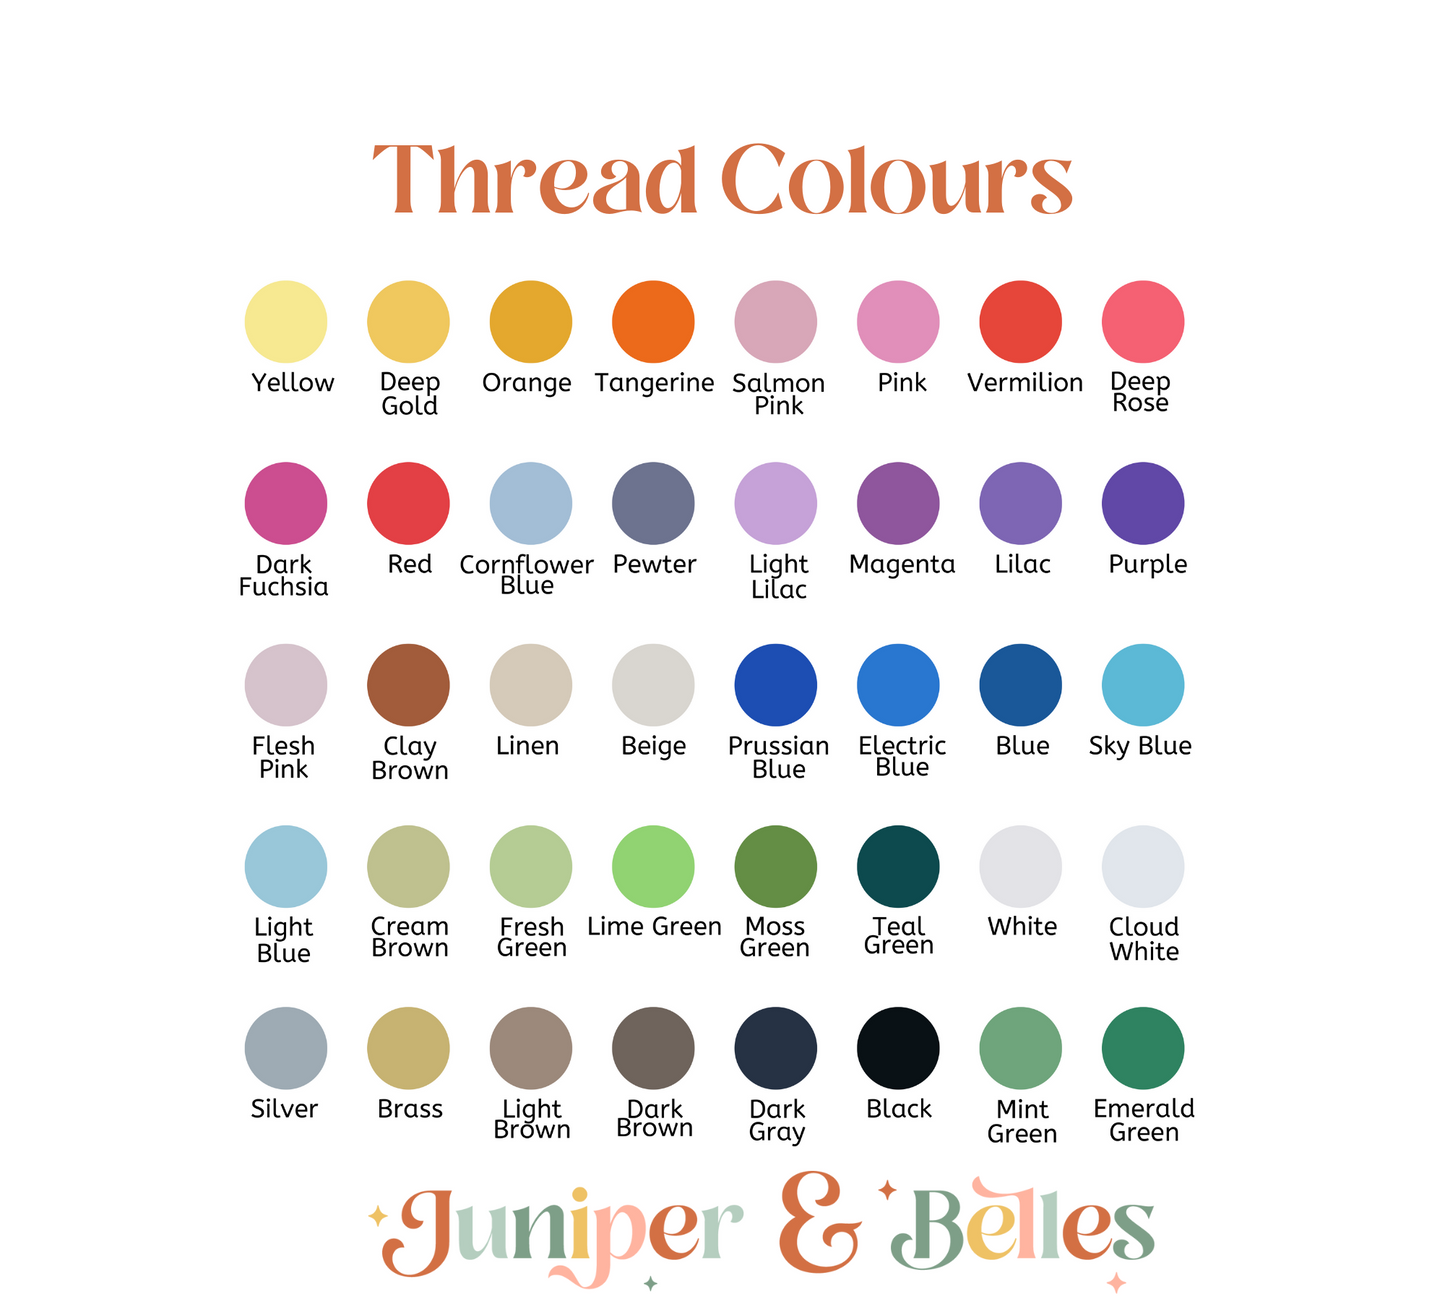 Custom Unisex Sweater - Multiple Colour Choices